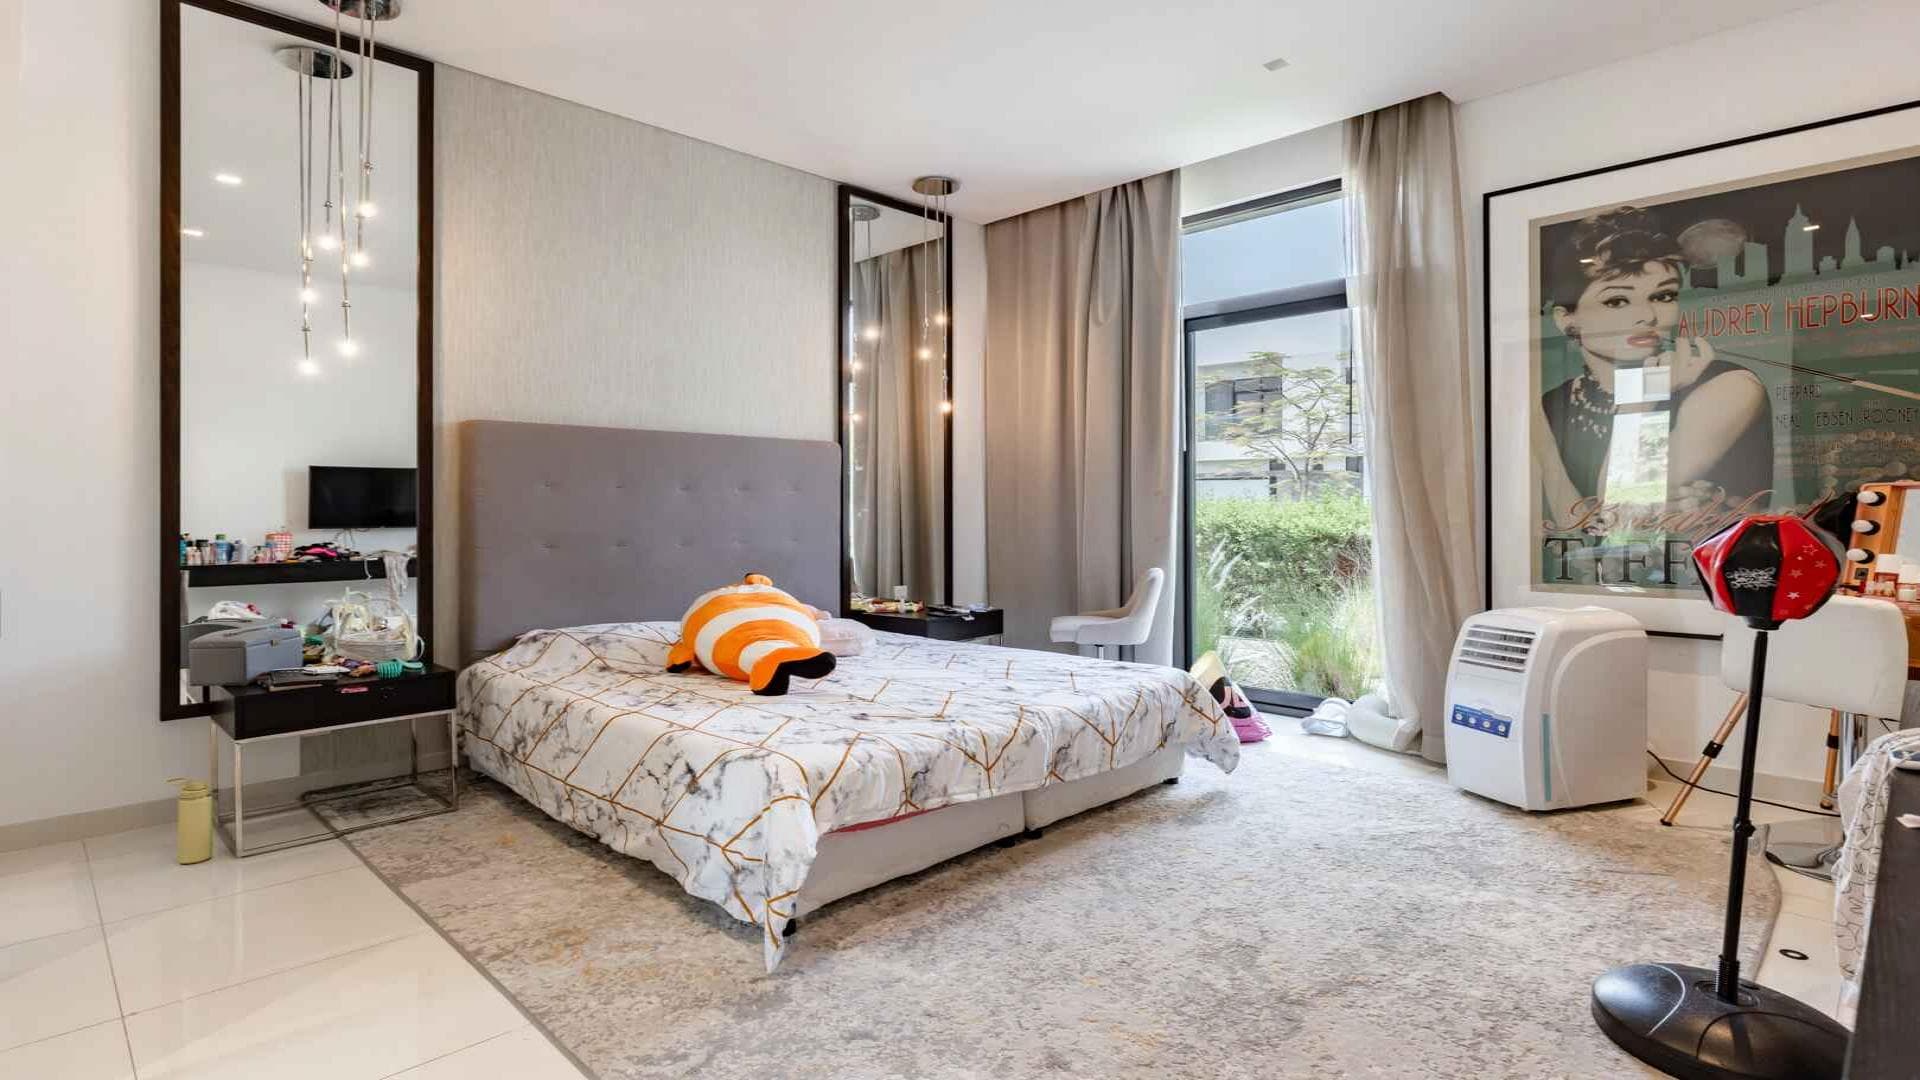 5 Bedroom Villa For Rent Tasameem Tower 1 Lp37388 116a803545ebb100.jpg